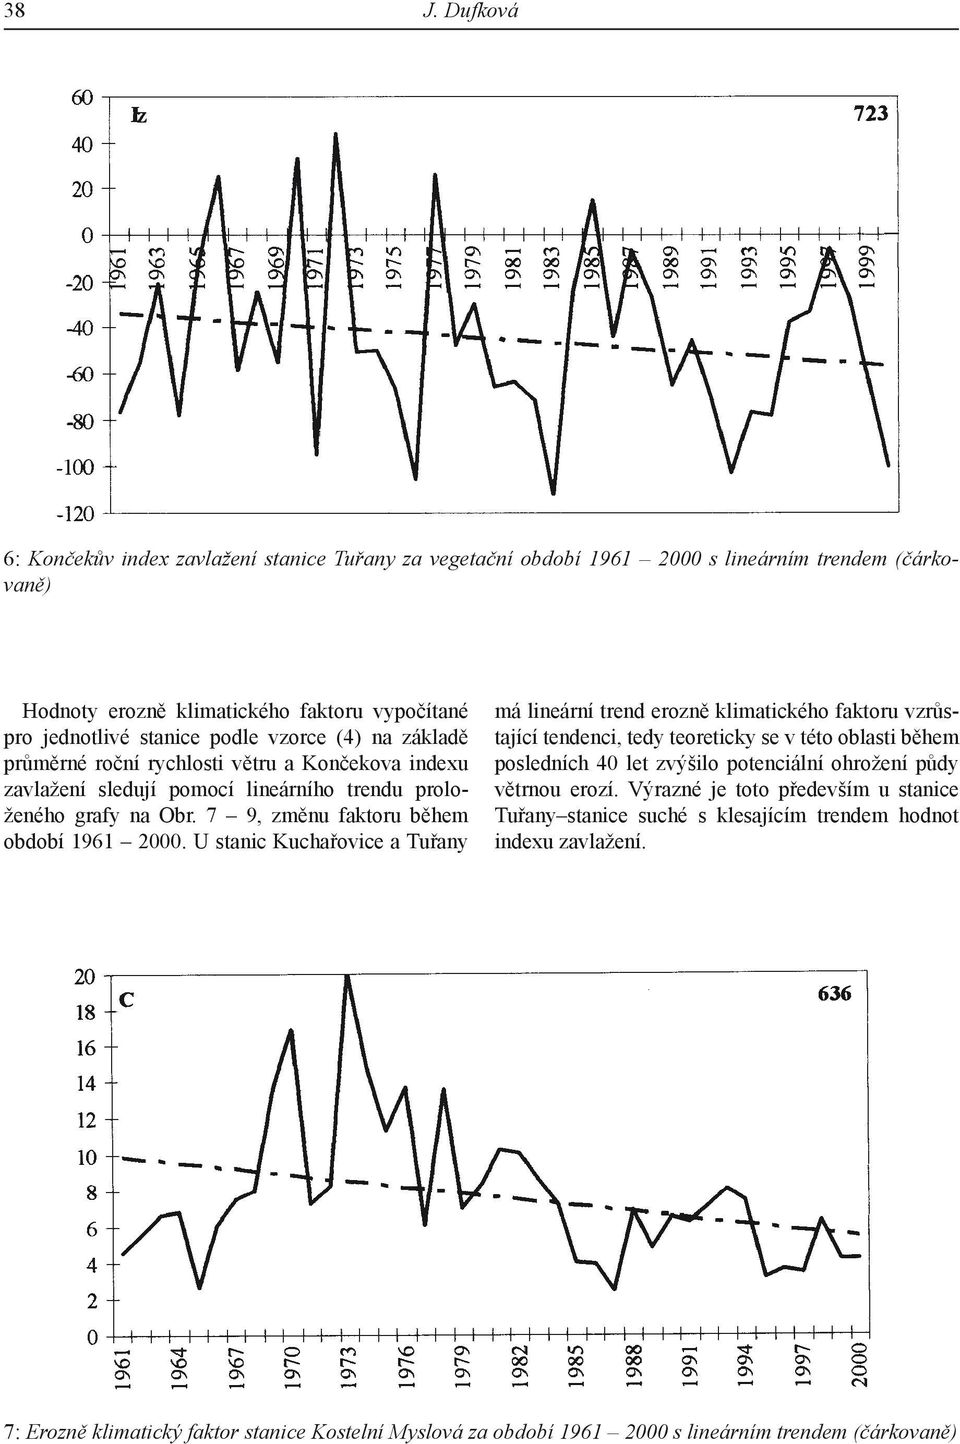 U stanic Kuchařovice a Tuřany má lineární trend erozně klimatického faktoru vzrůstající tendenci, tedy teoreticky se v této oblasti během posledních 40 let zvýšilo potenciální ohrožení půdy větrnou